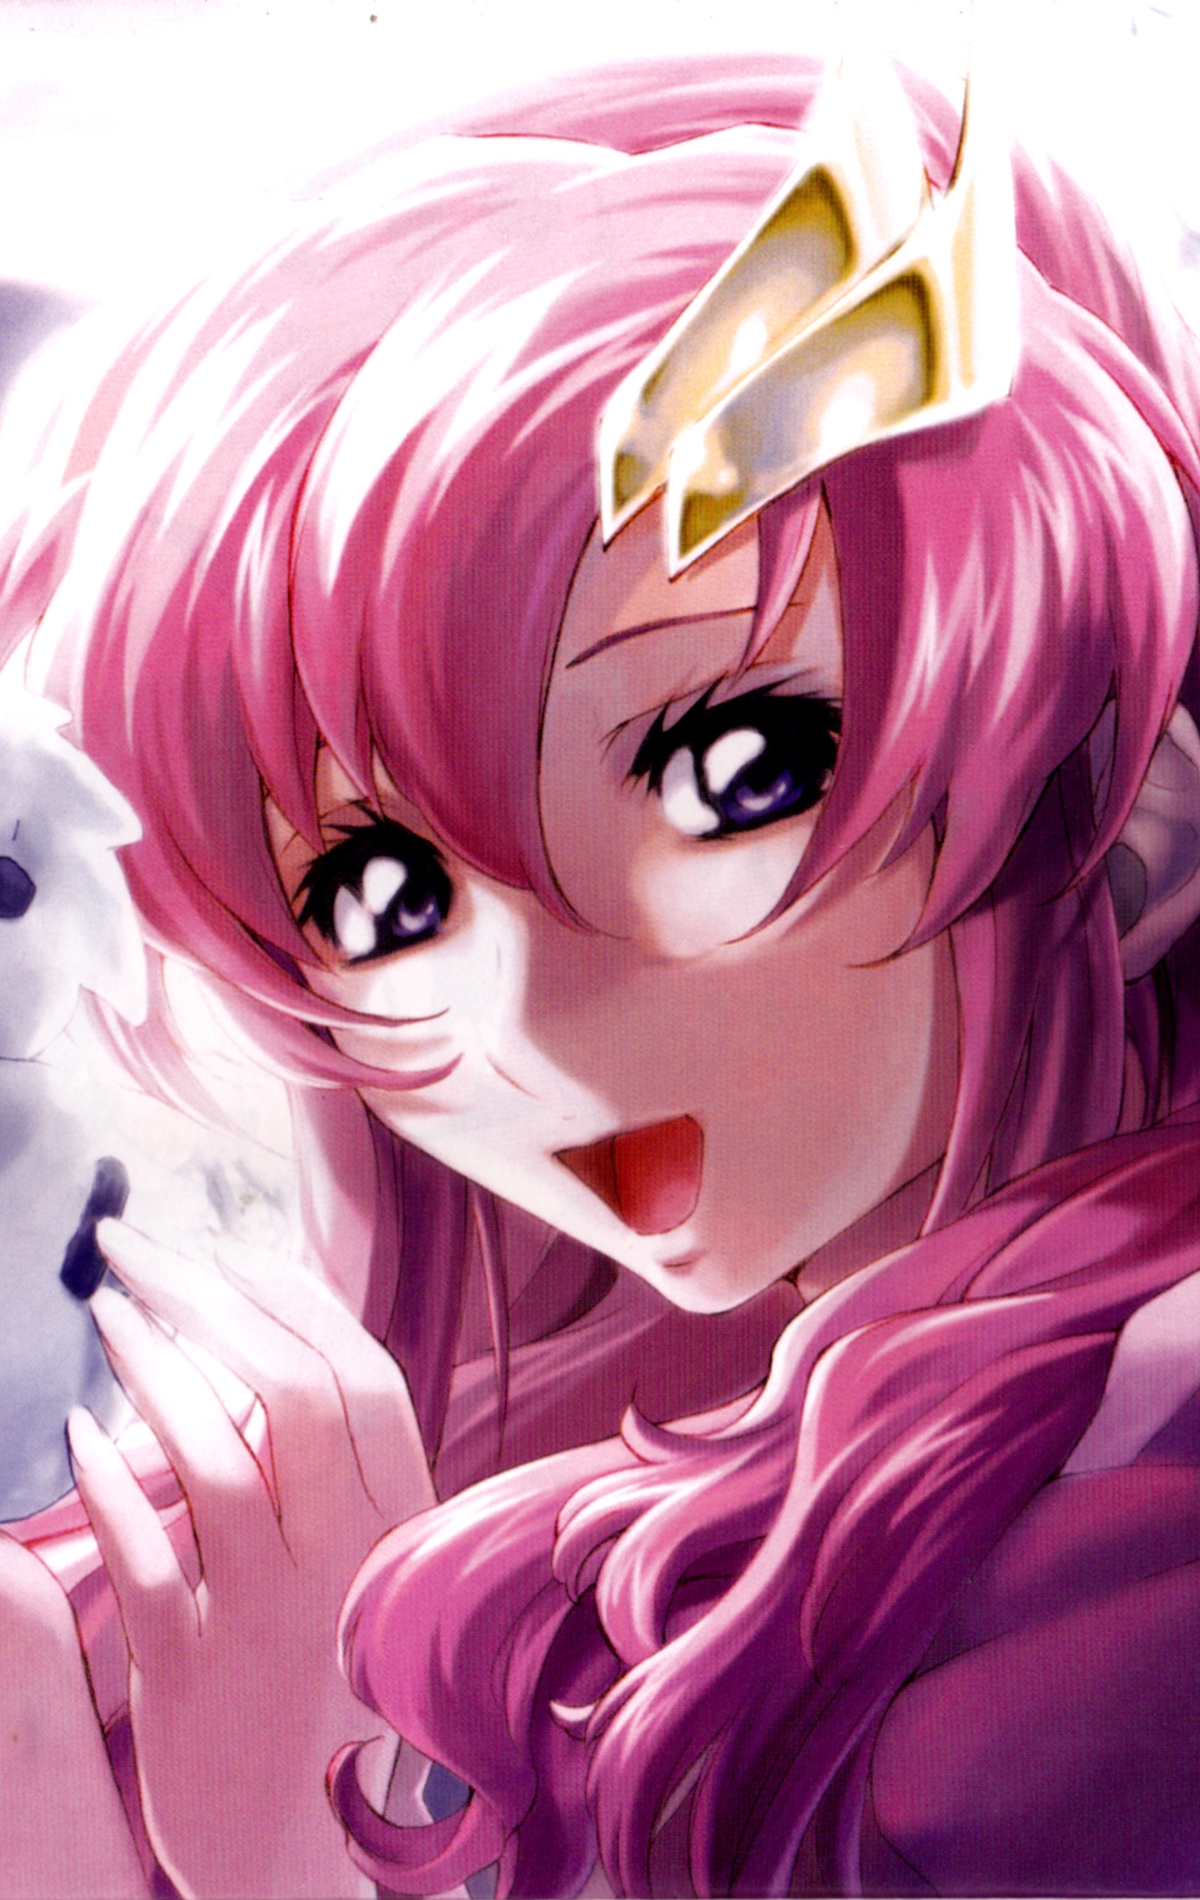 Картинка: Девушка, розовые волосы, улыбка, лицо, глаза, настроение, снеговик, деревья, зима